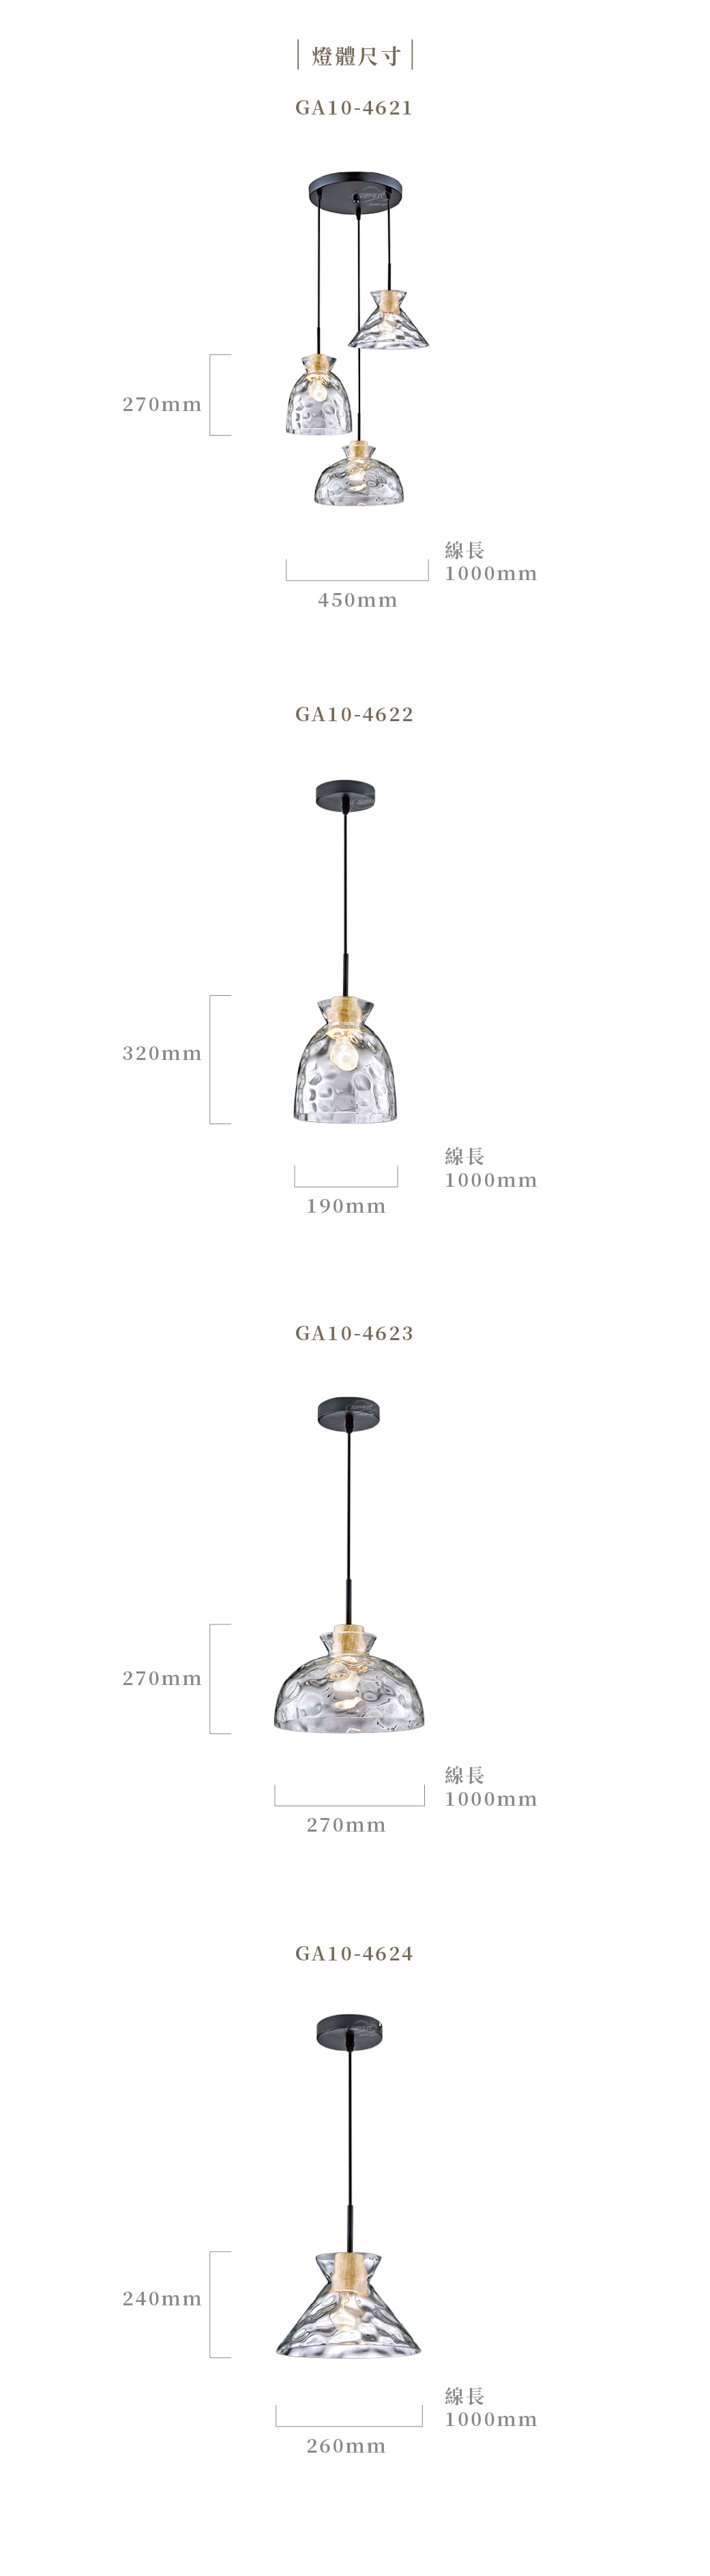 GA10官網圖文-木藝特殊造型玻璃餐吊燈03